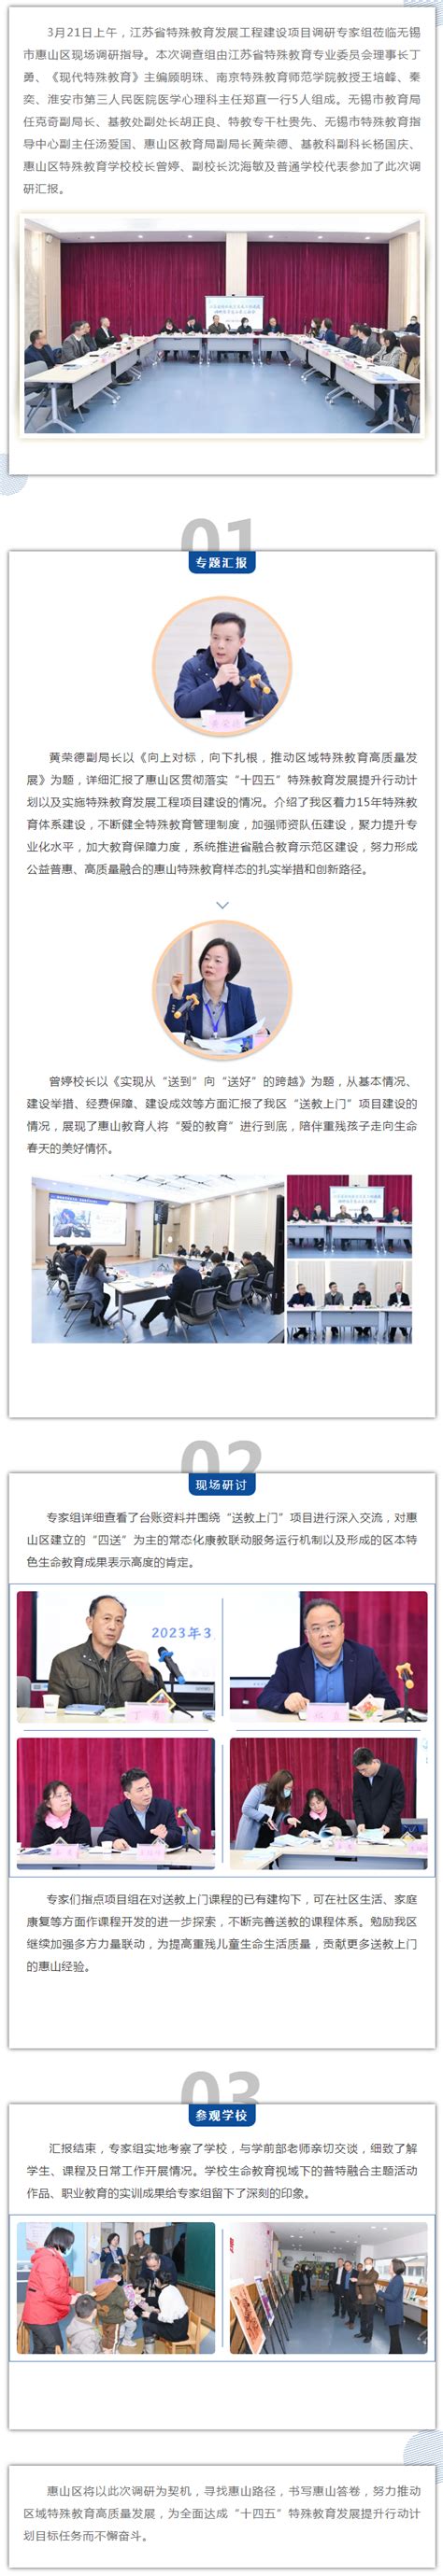 江苏省特殊教育指导中心工作启动会暨揭牌仪式在我校举行